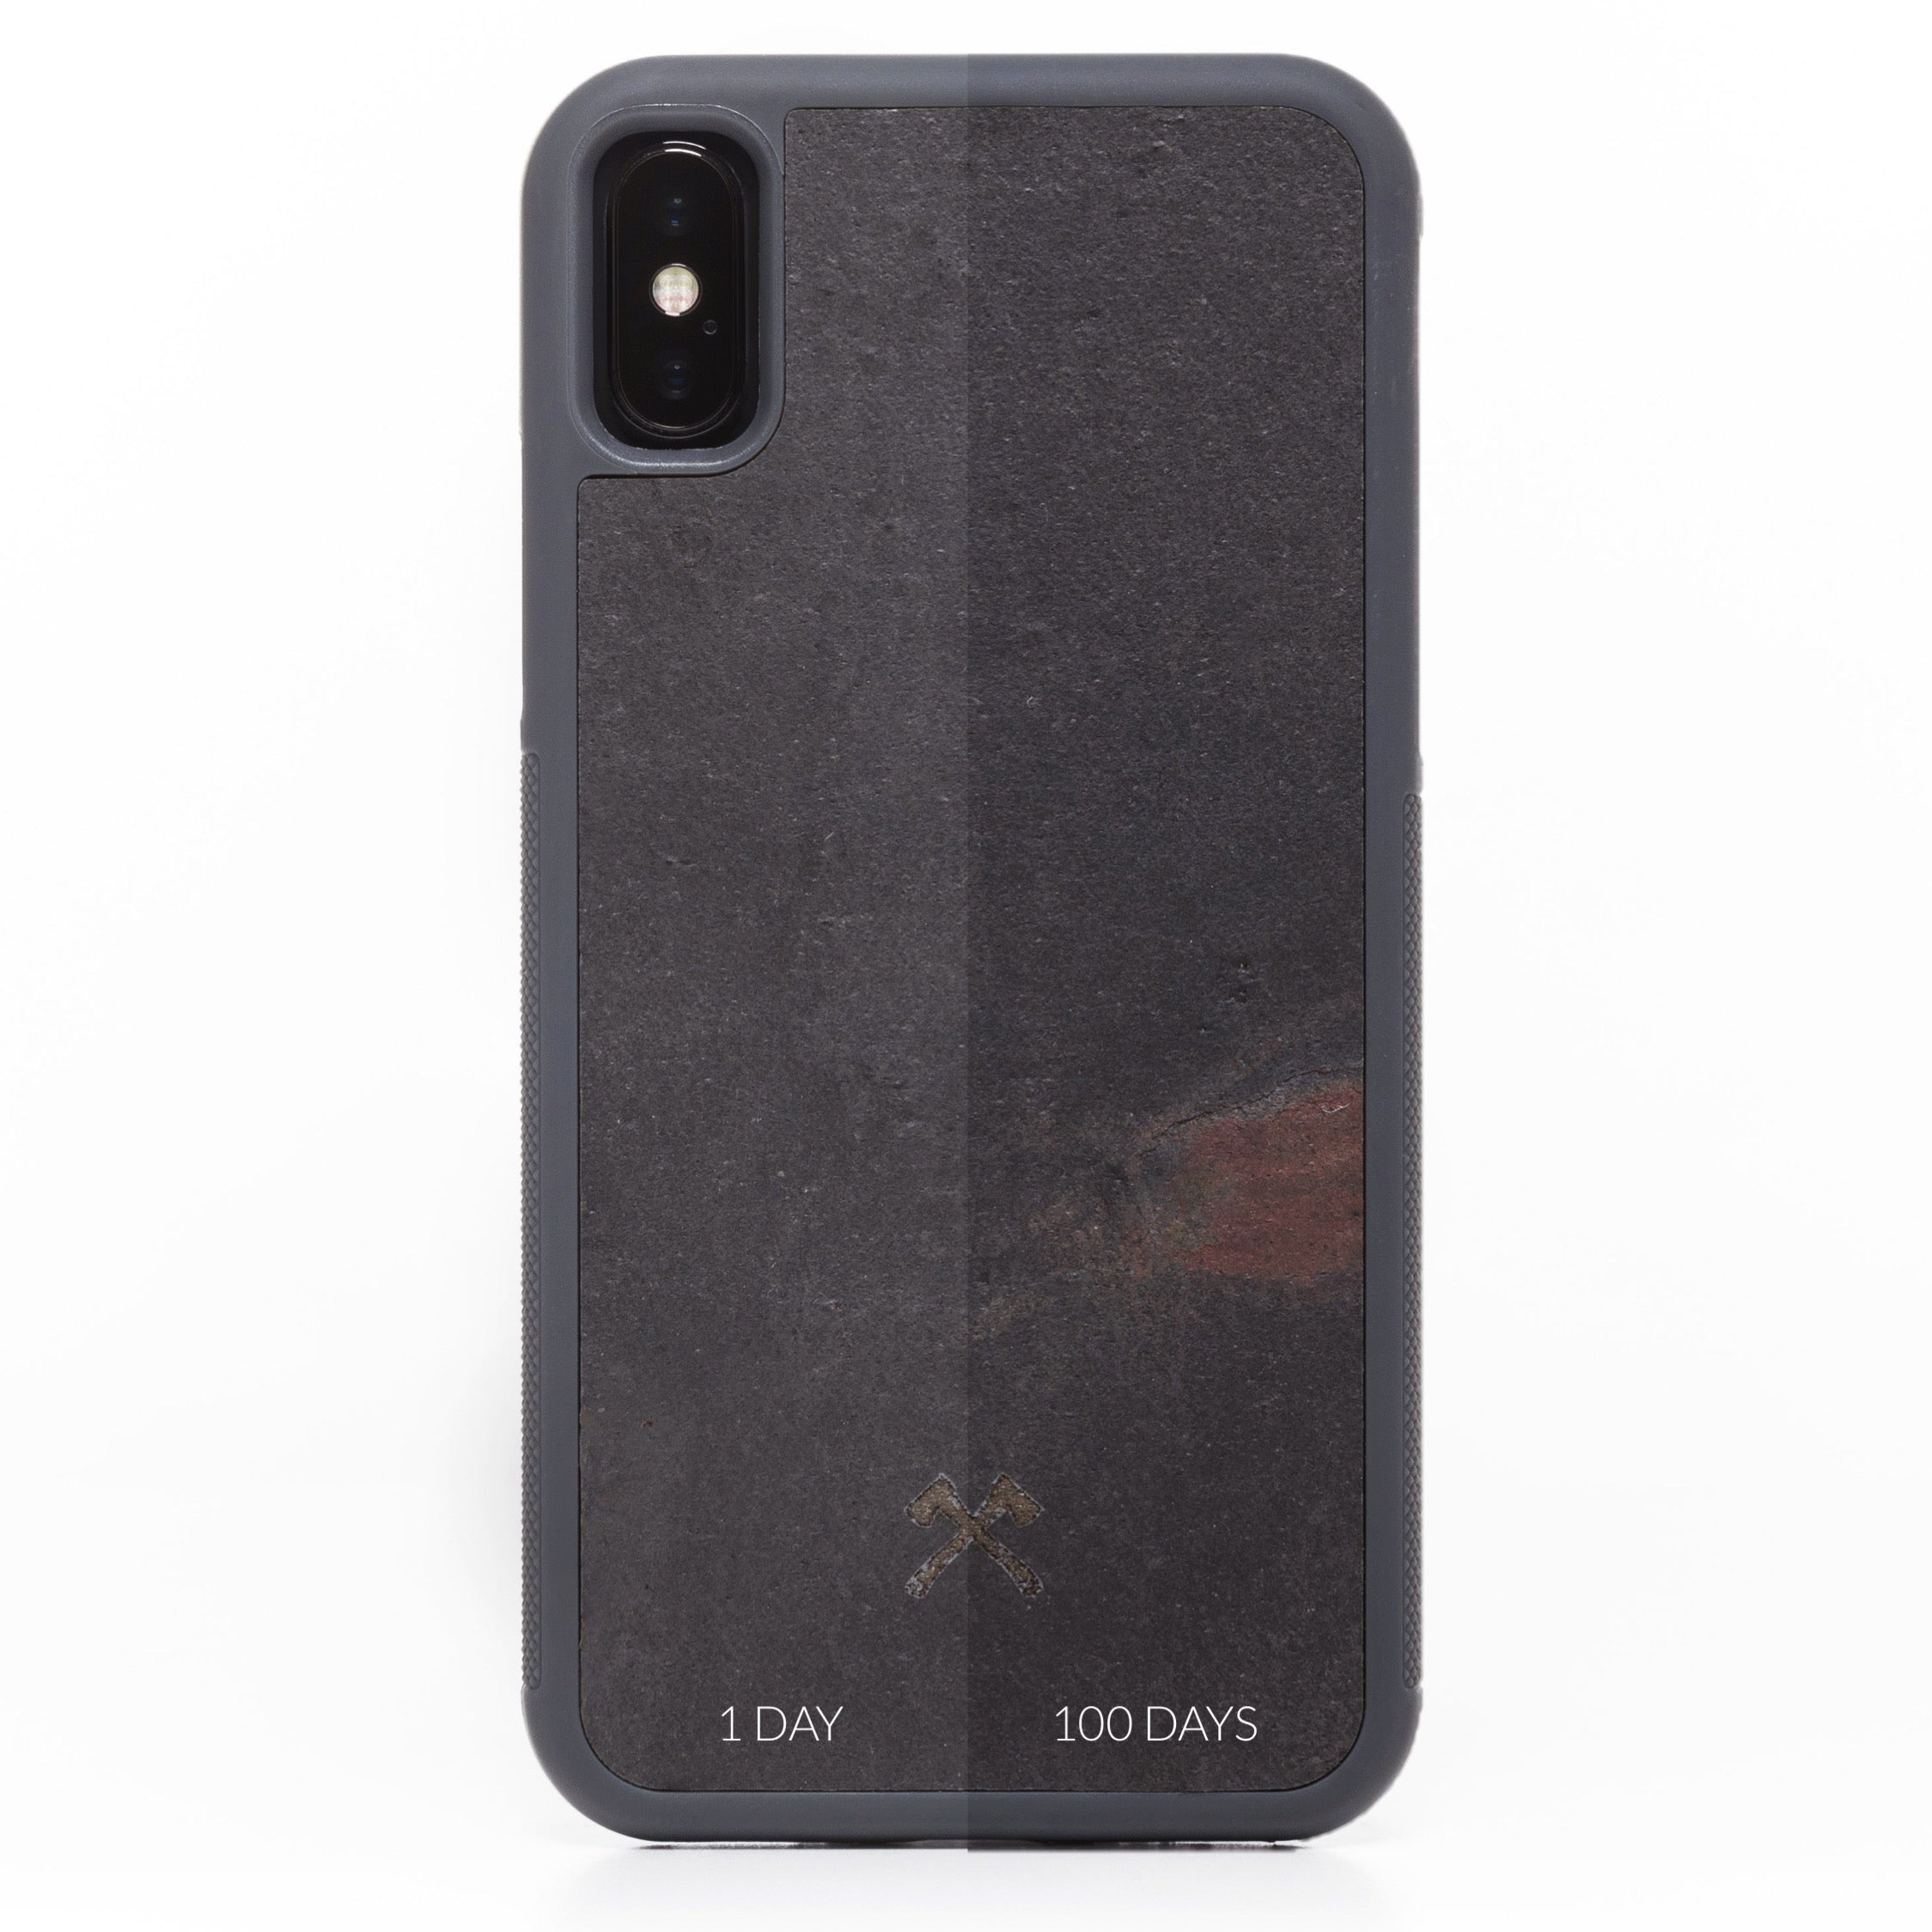 EcoBump Stone - iPhone XS Max - Volcano Black